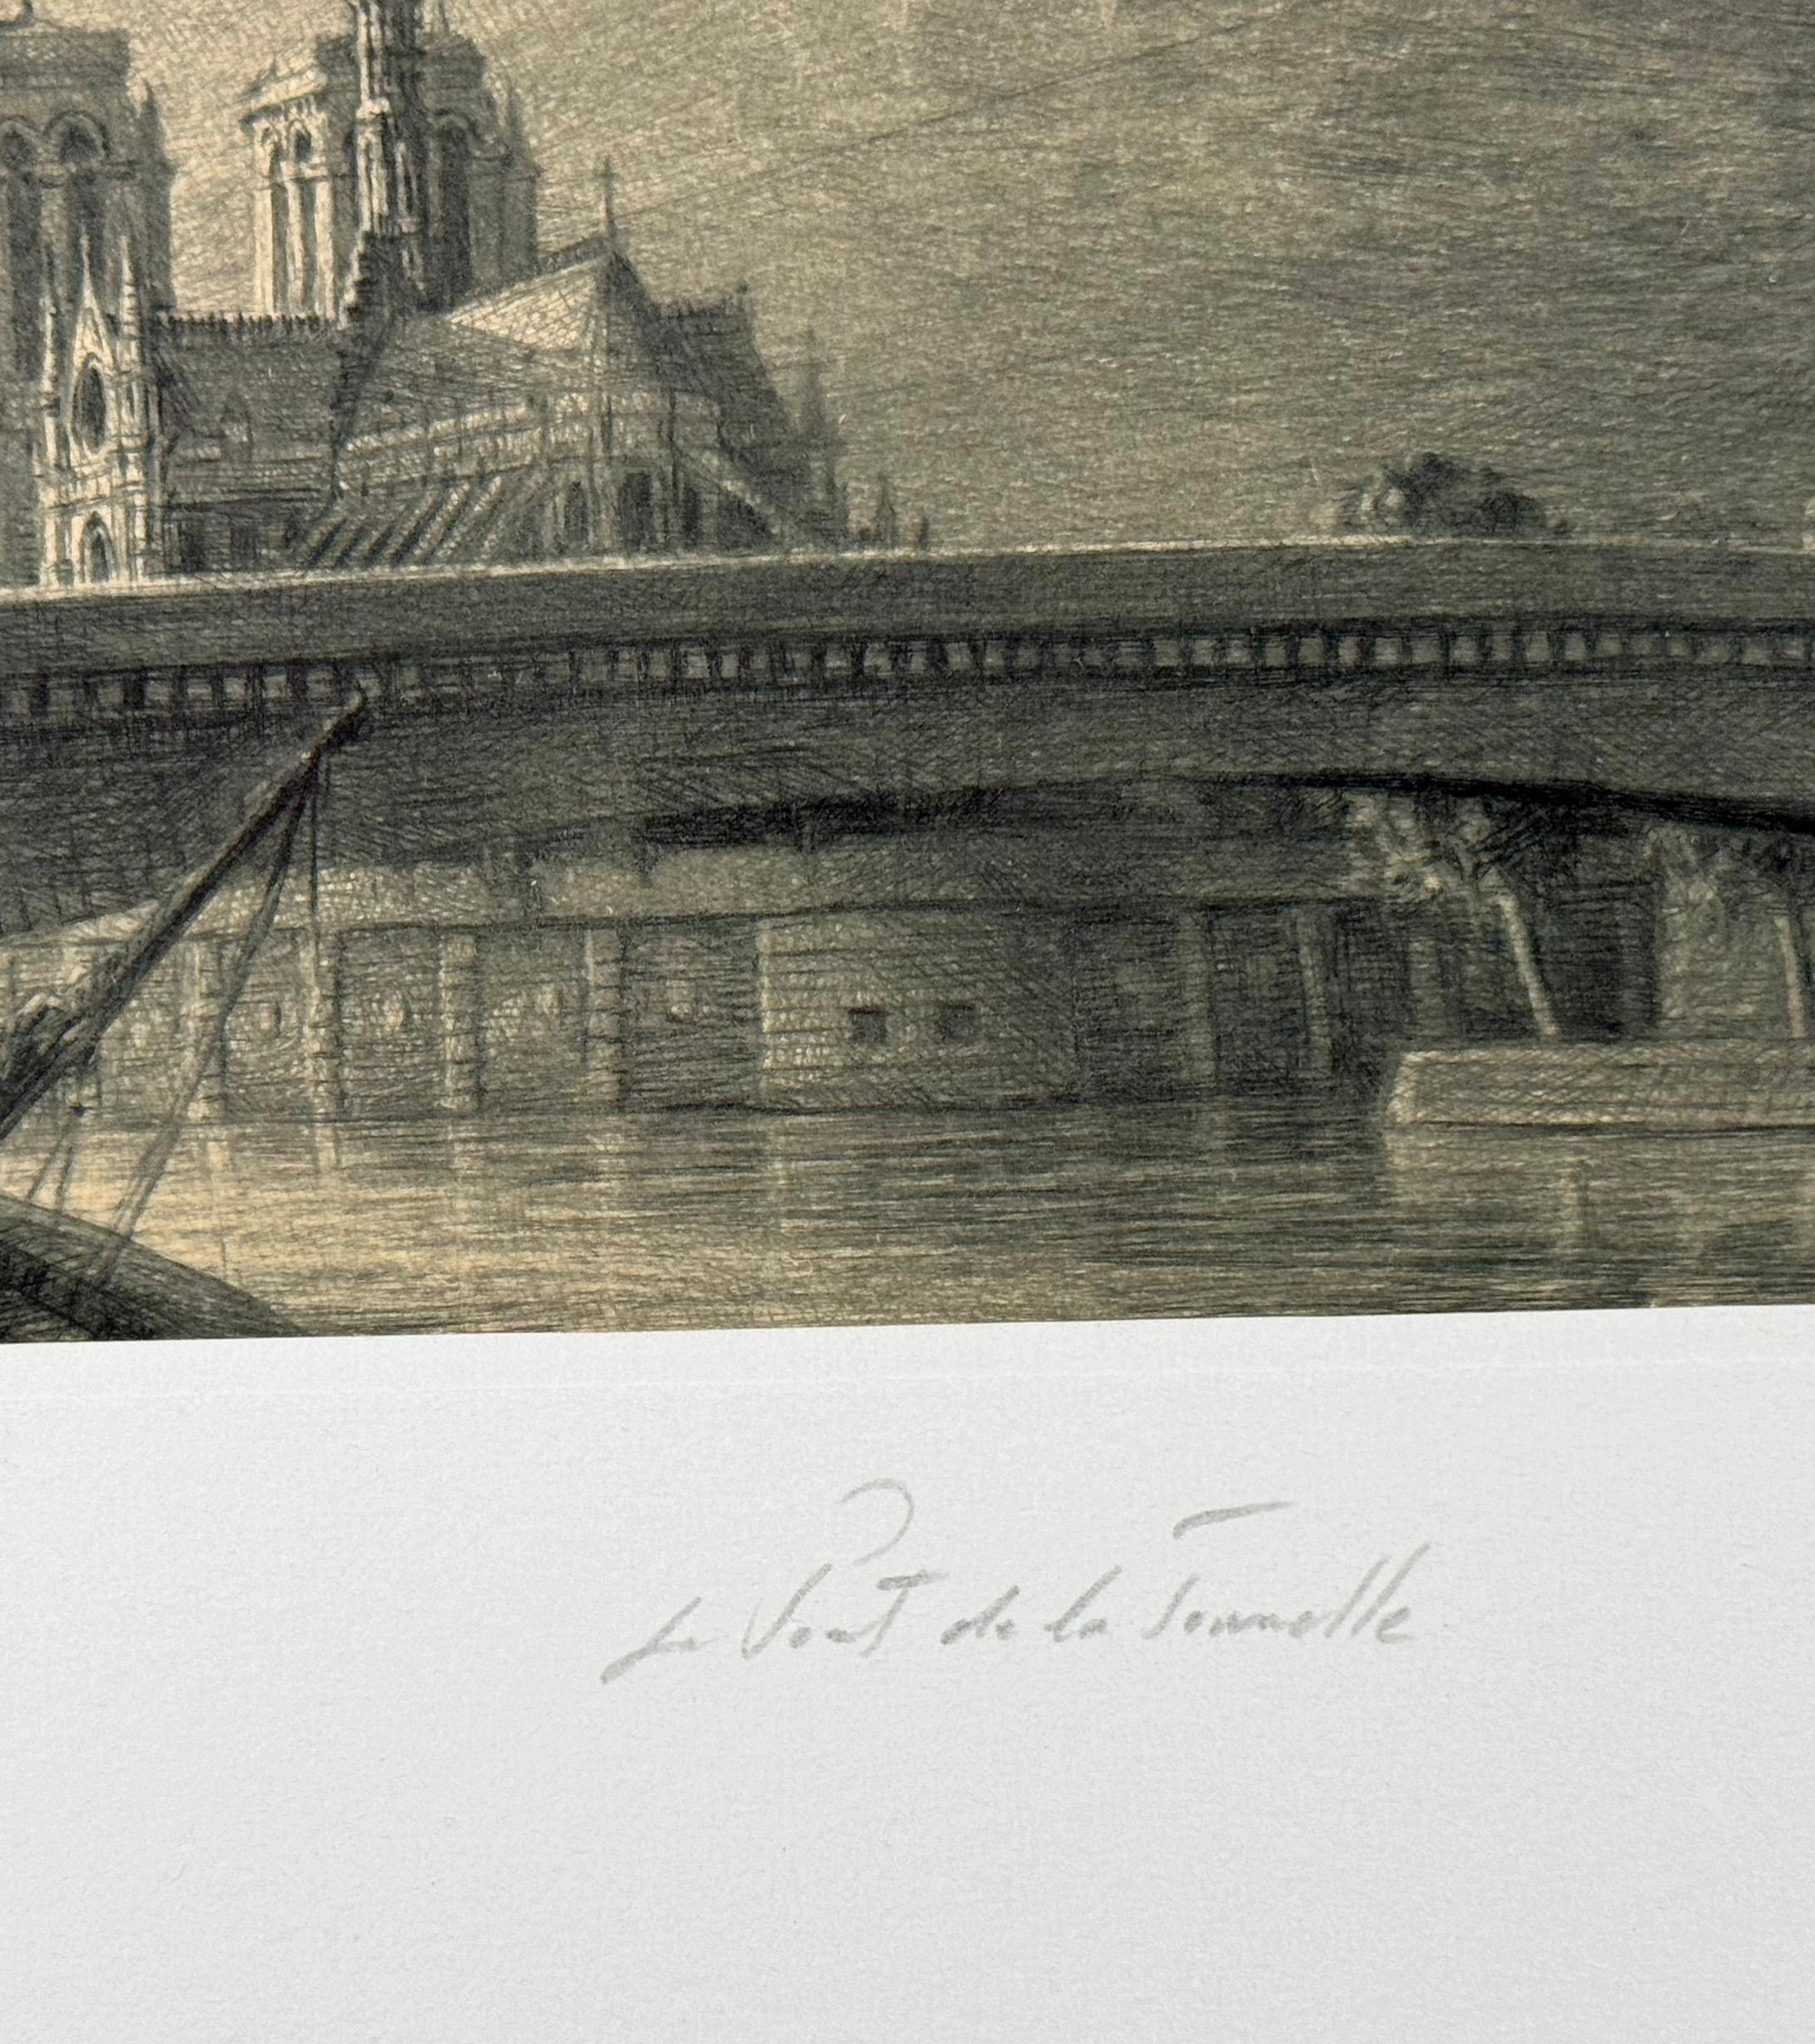 Medium: Kaltnadel auf Chine Collé
Auflage von 180 Stück
Bildgröße: 4,5 x 9 Zoll

Die Pont de la Tournelle verbindet die Ile St-Louis mit dem linken Ufer und ist mit einer riesigen Statue von Sainte-Genevieve, einer der Schutzheiligen von Paris,